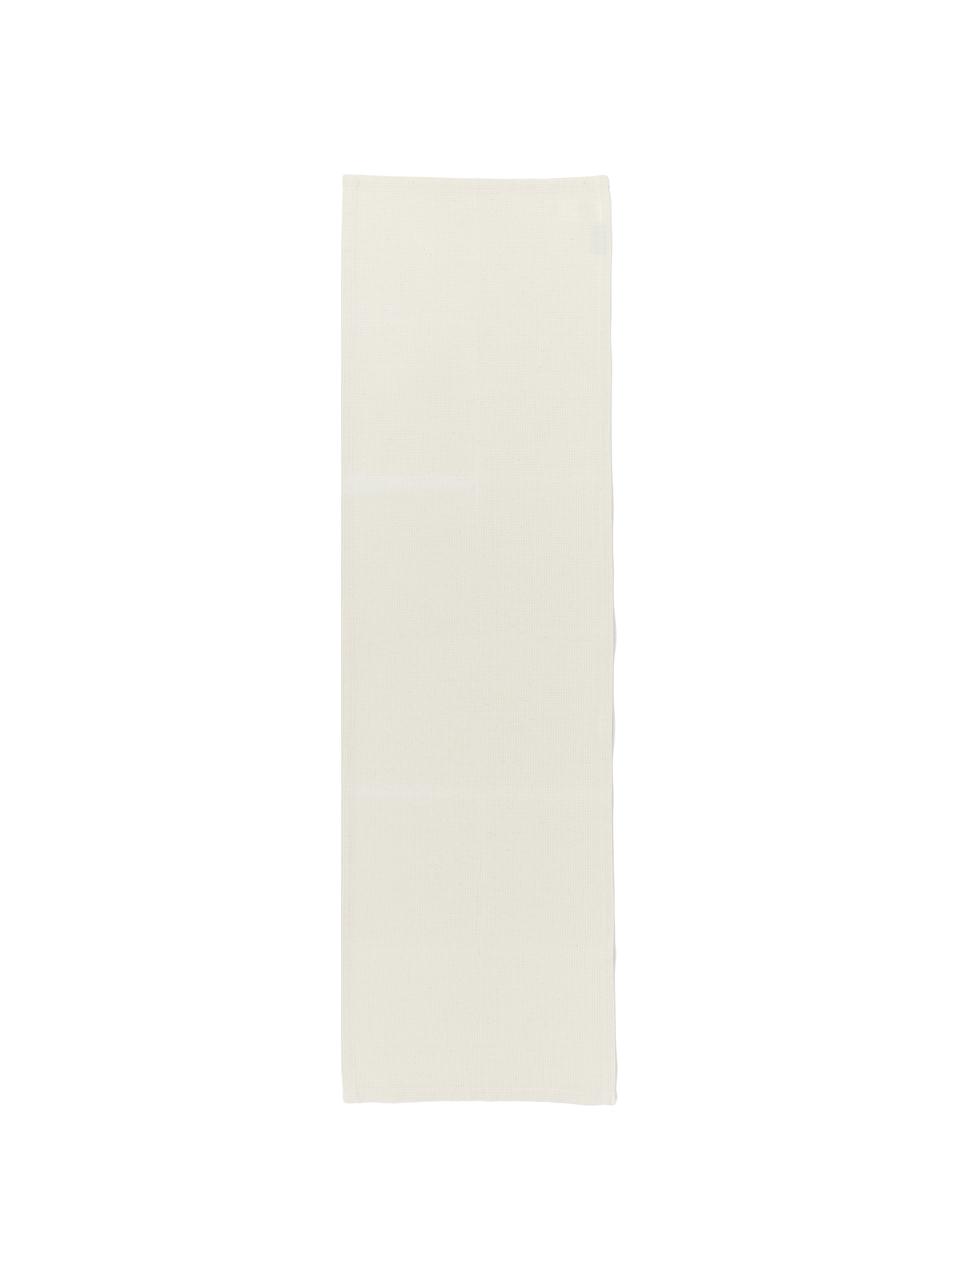 Waffelpiqué-Tischläufer Kubo in Beige, 65% Baumwolle, 35% Polyester, Beige, 40 x 145 cm